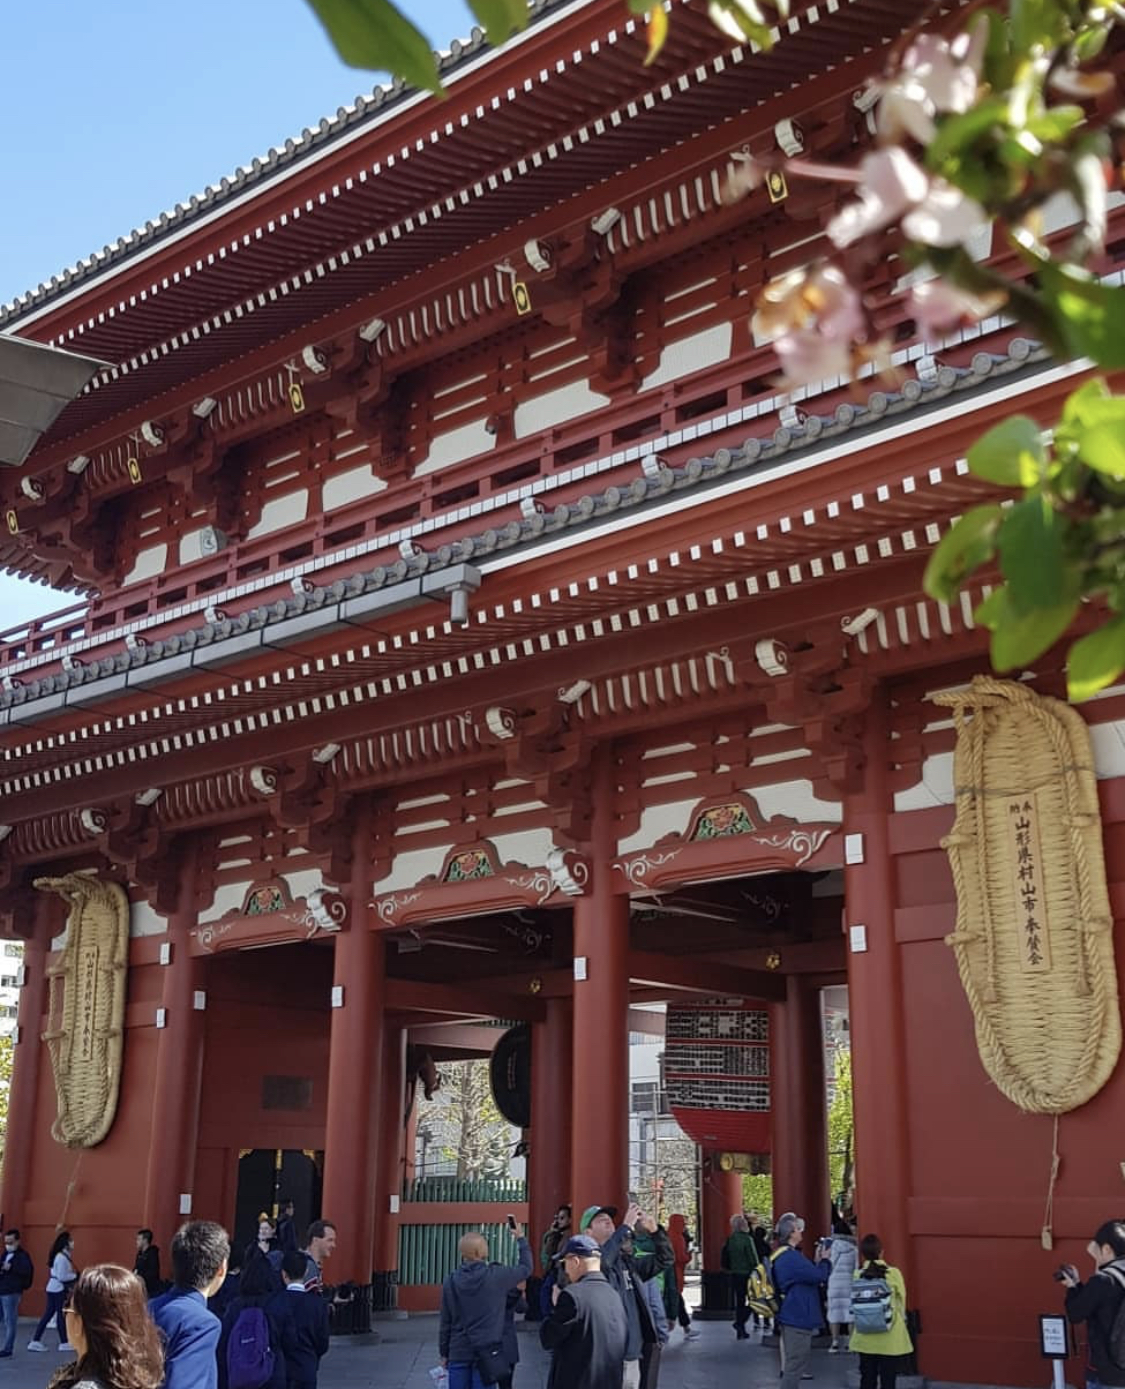 Red temple gates. 2019 Japan Tour.